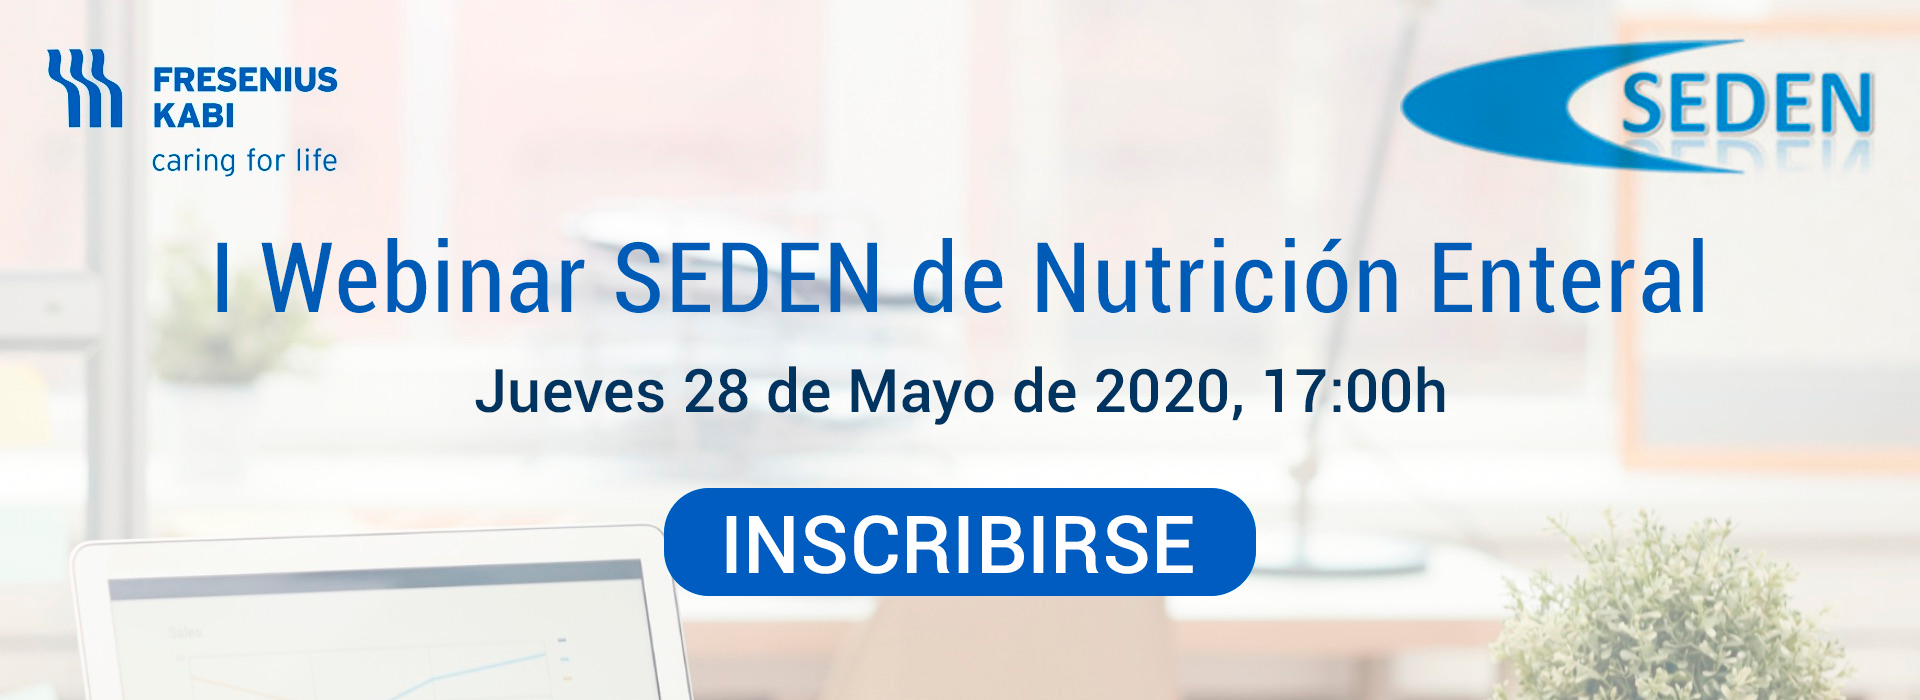 I Webinar SEDEN de Nutrición Enteral - 28 de mayo de 2020